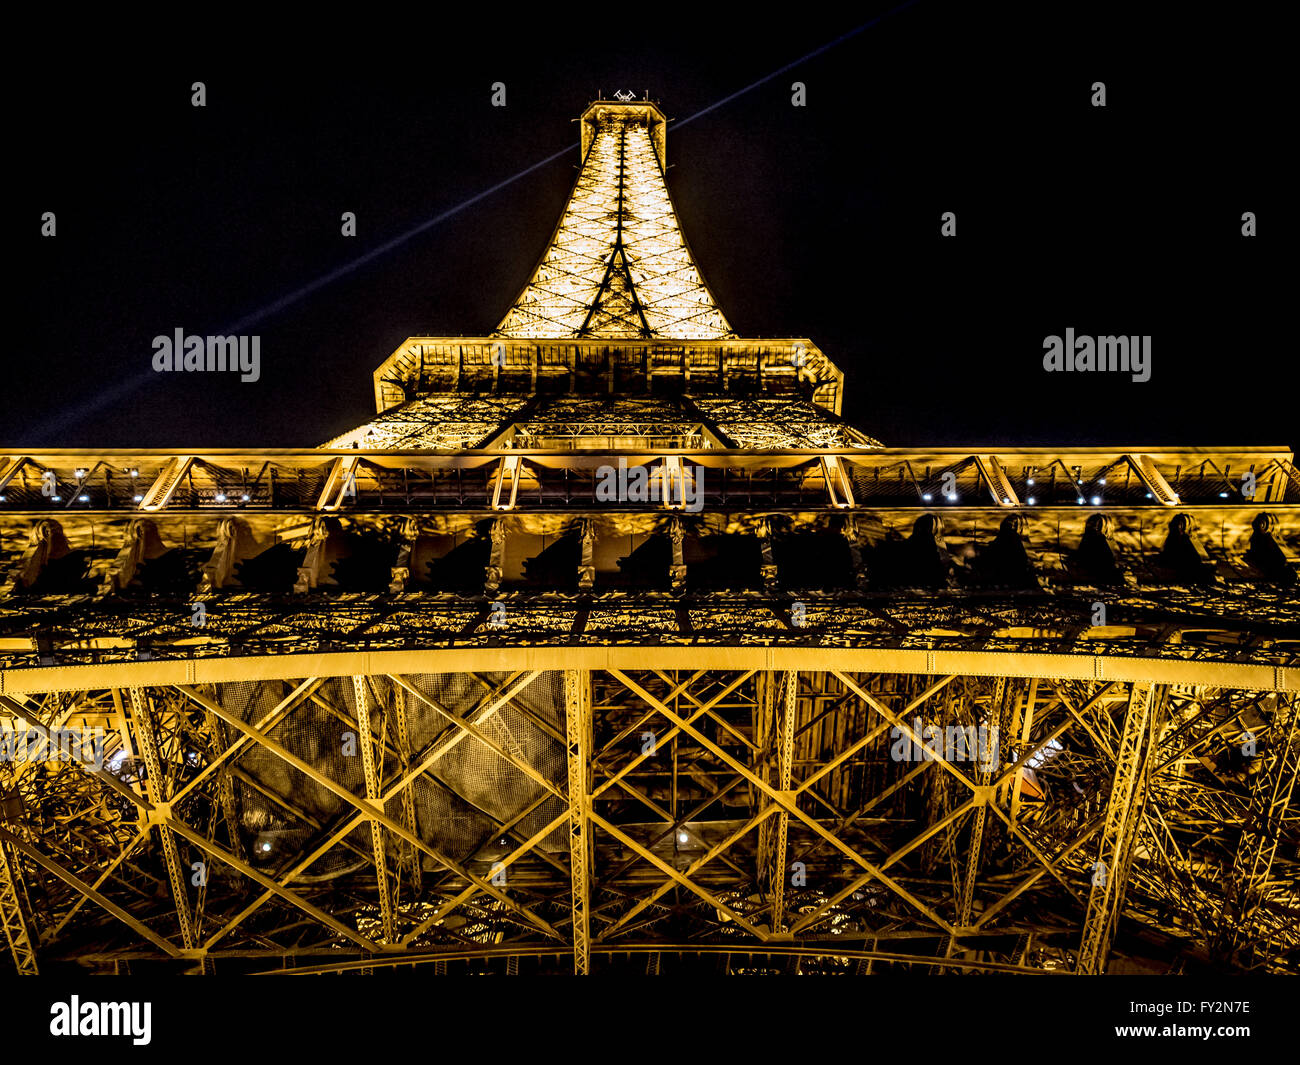 La Tour Eiffel illuminée la nuit, Paris, France. Banque D'Images